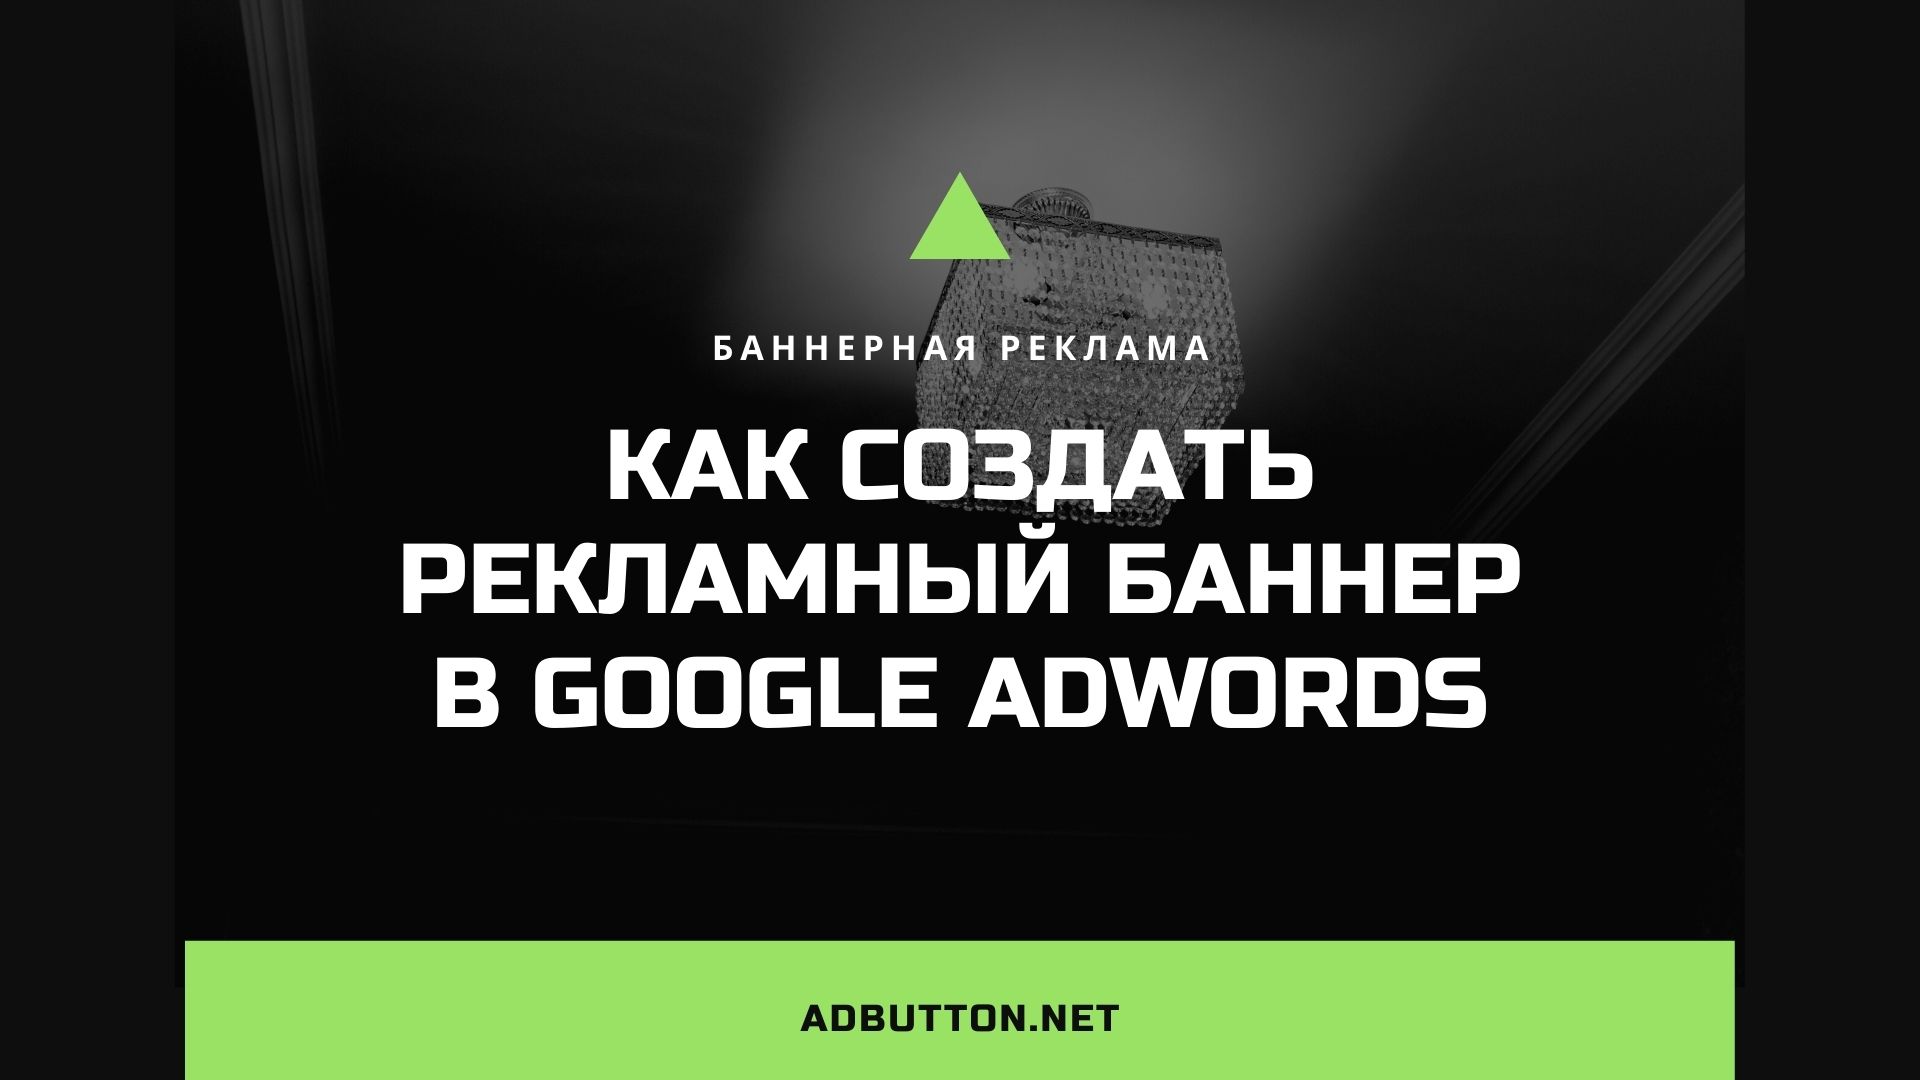 Оформление и создание рекламного баннера в Google Adwords